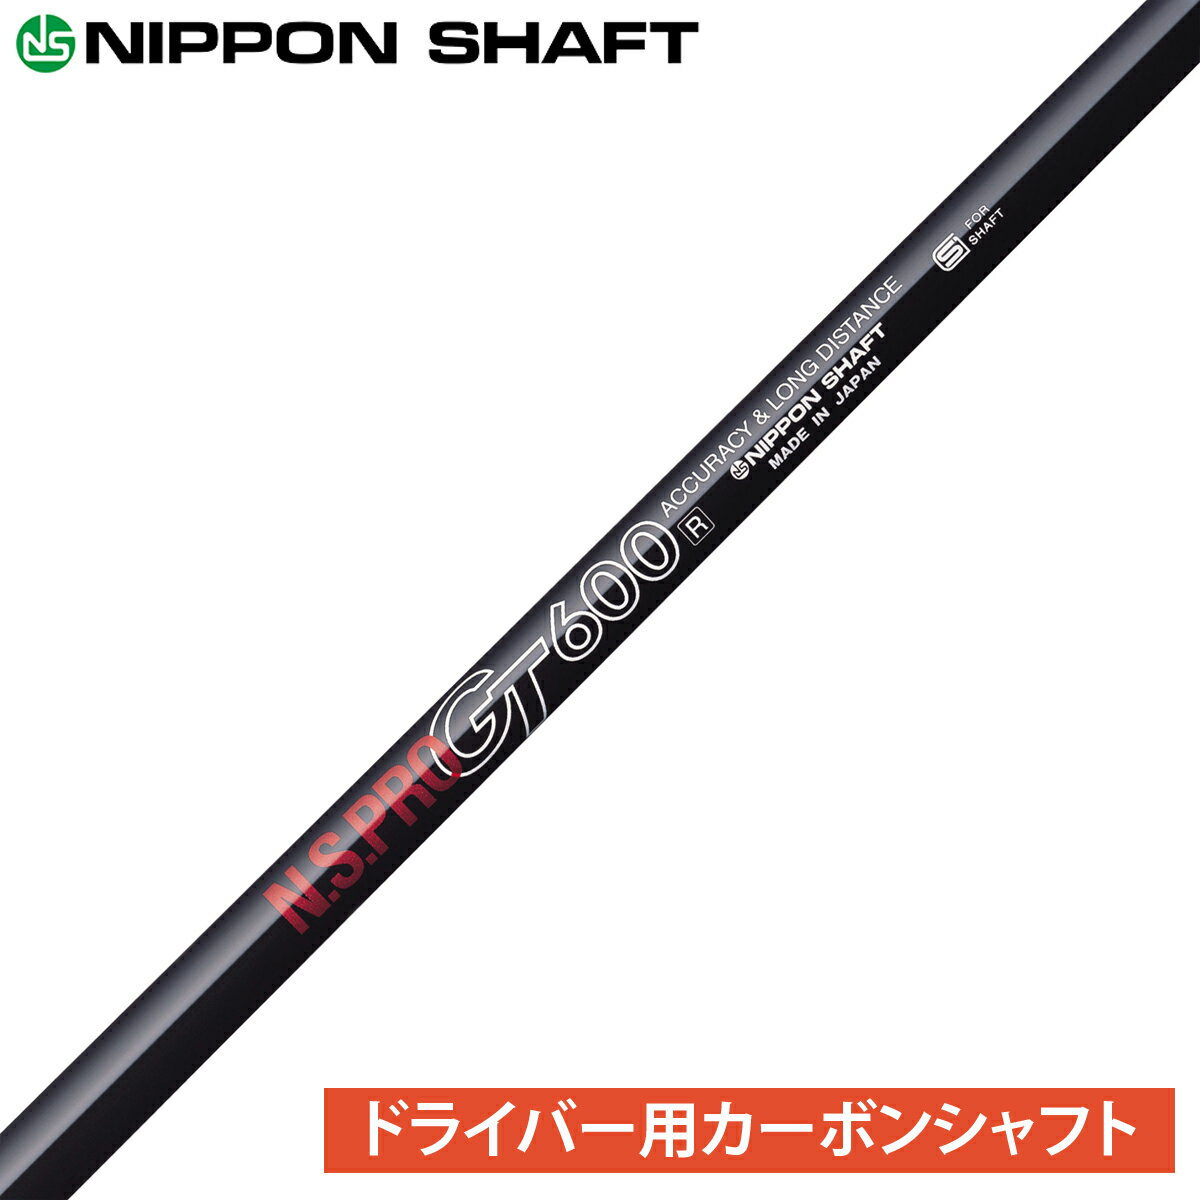 NIPPON SHAFT 日本シャフト 日本正規品 N.S.PRO GT カーボンシャフト 単品 「 ドライバー用 NSPRO 」